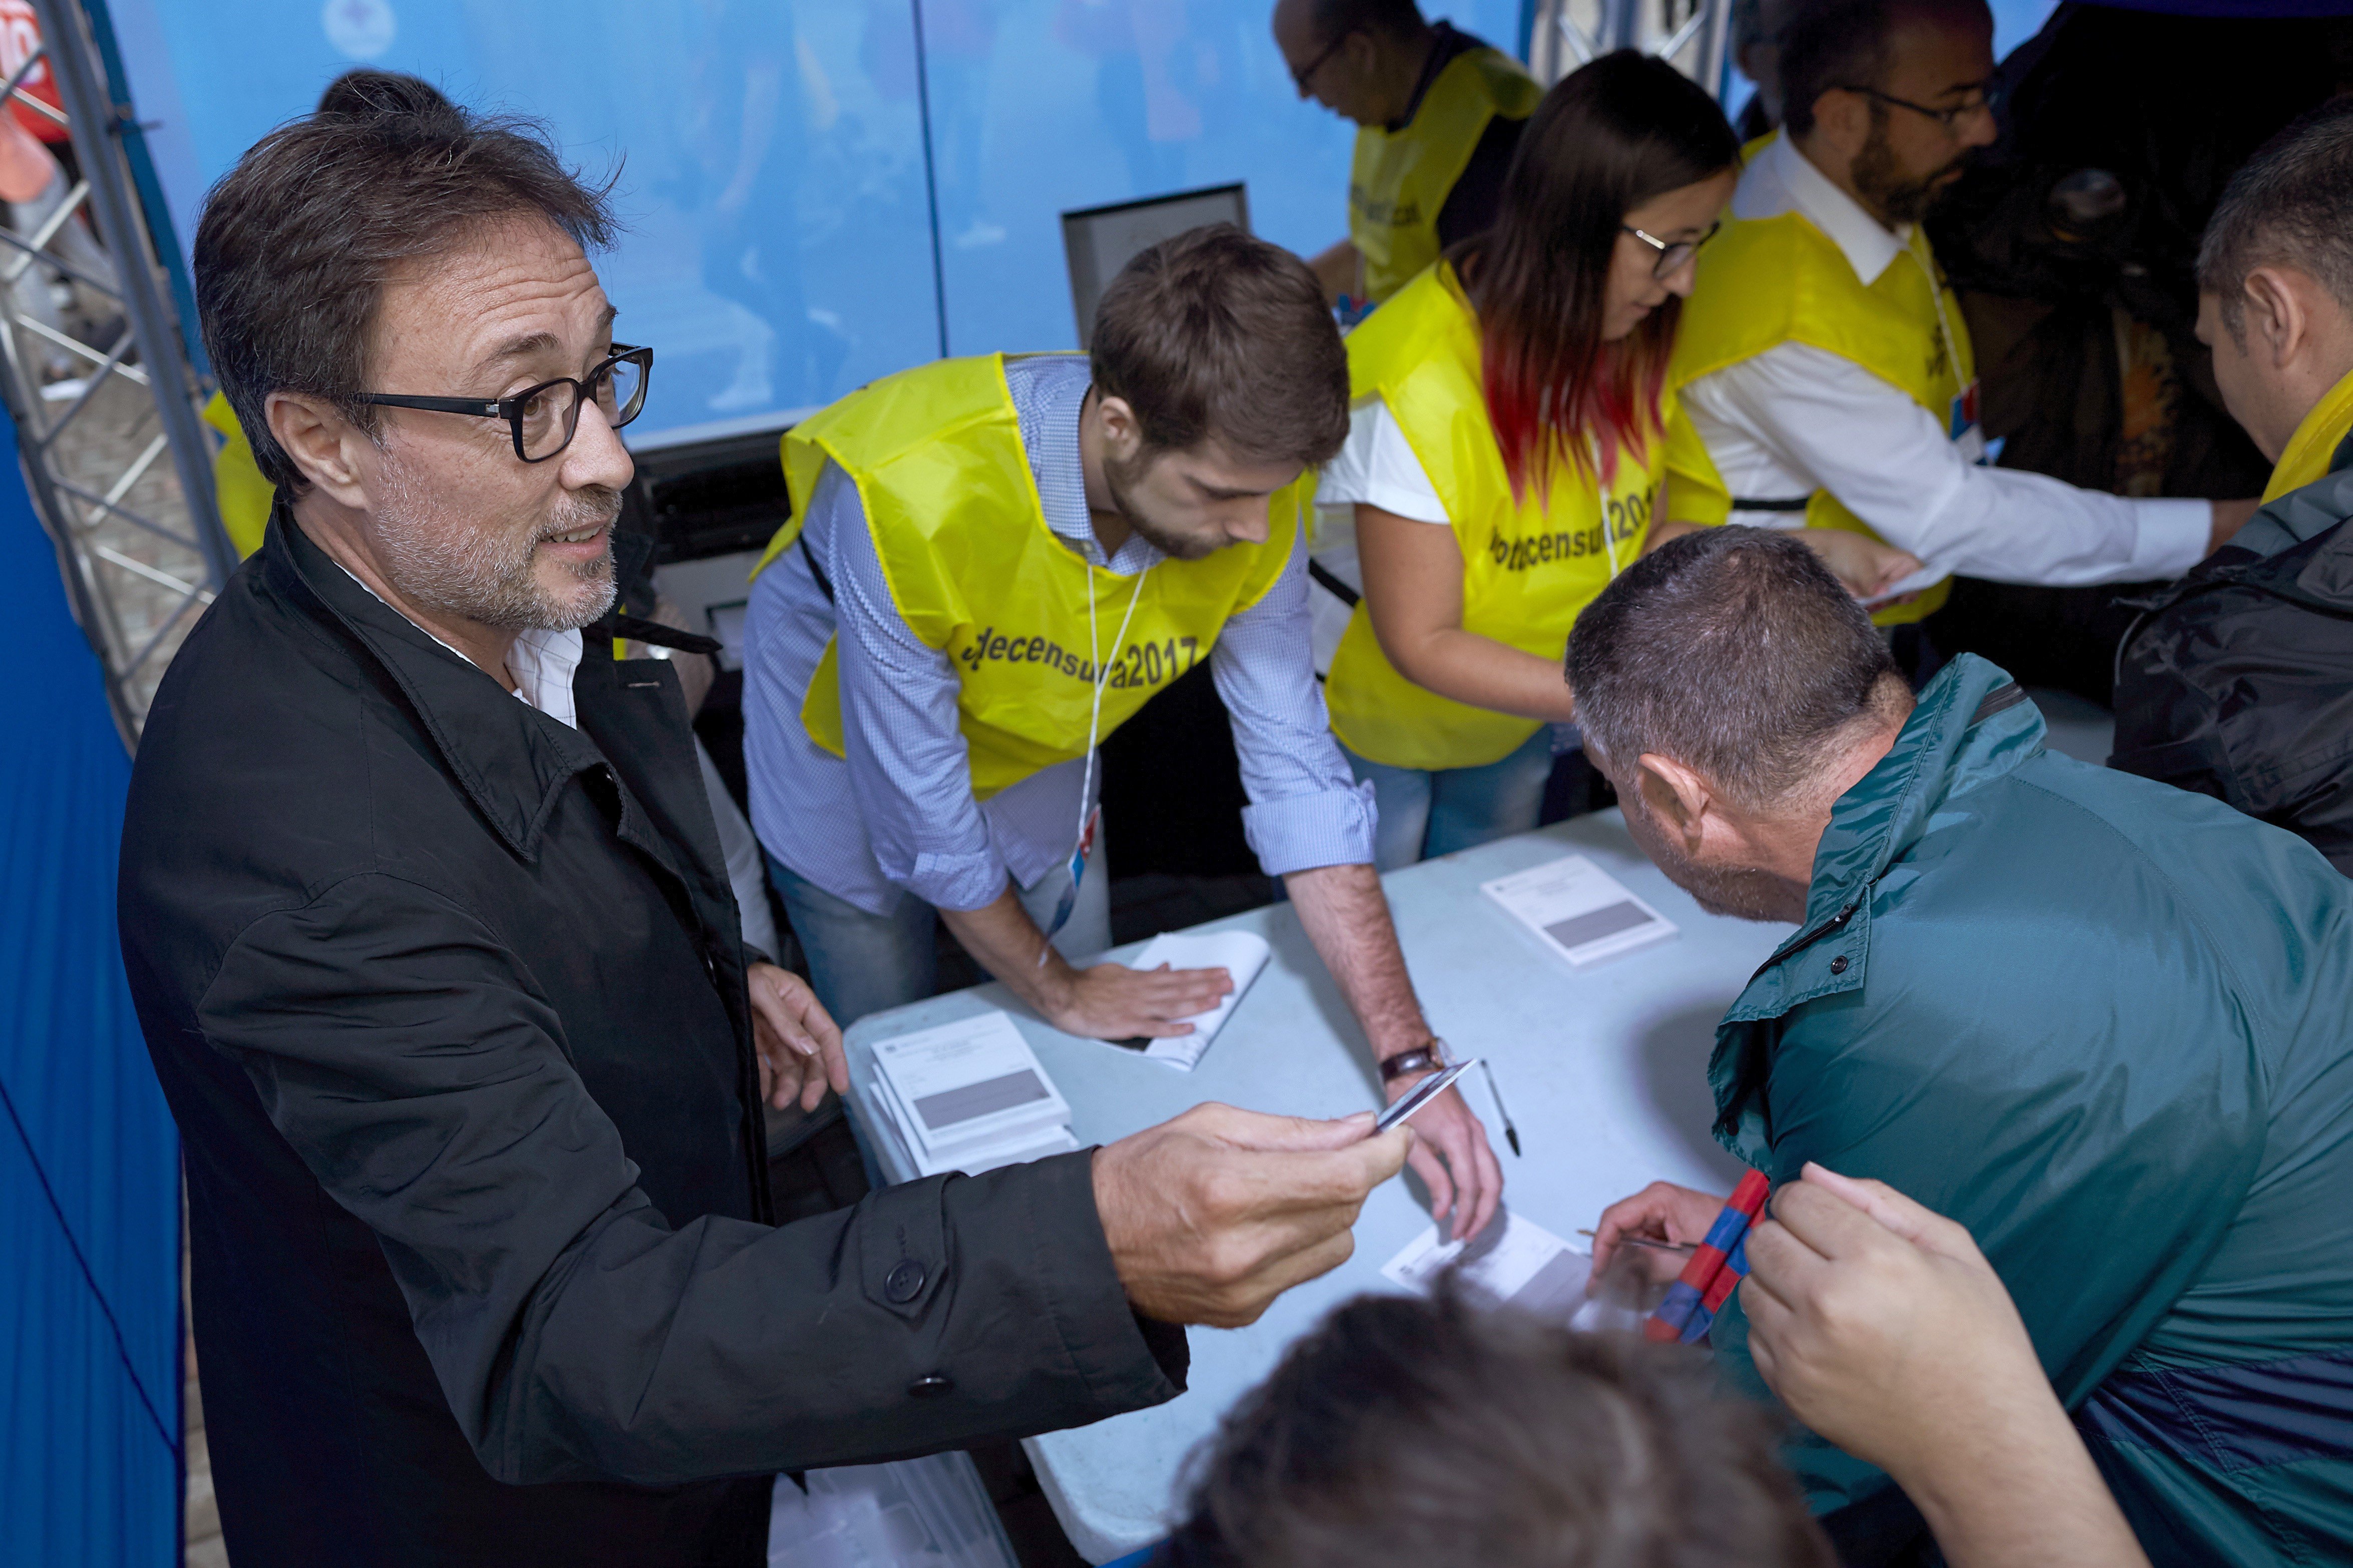 La moció de censura impulsada per Benedito s'apropa a les 7.000 firmes